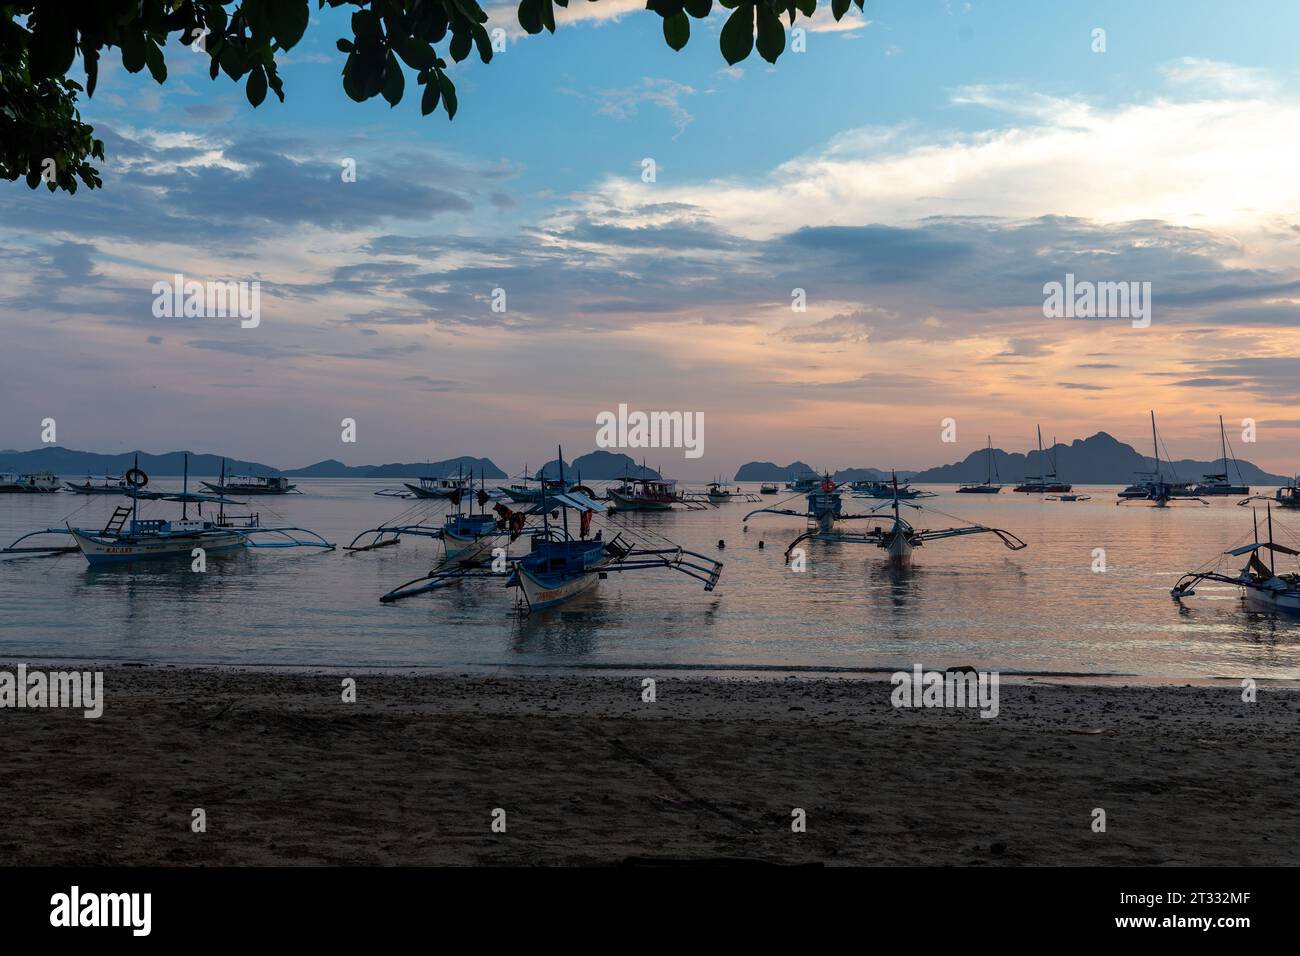 Bateaux traditionnels philippins banca avec stabilisateurs ancrés au large de la plage au coucher du soleil dans un paradis tropical Banque D'Images